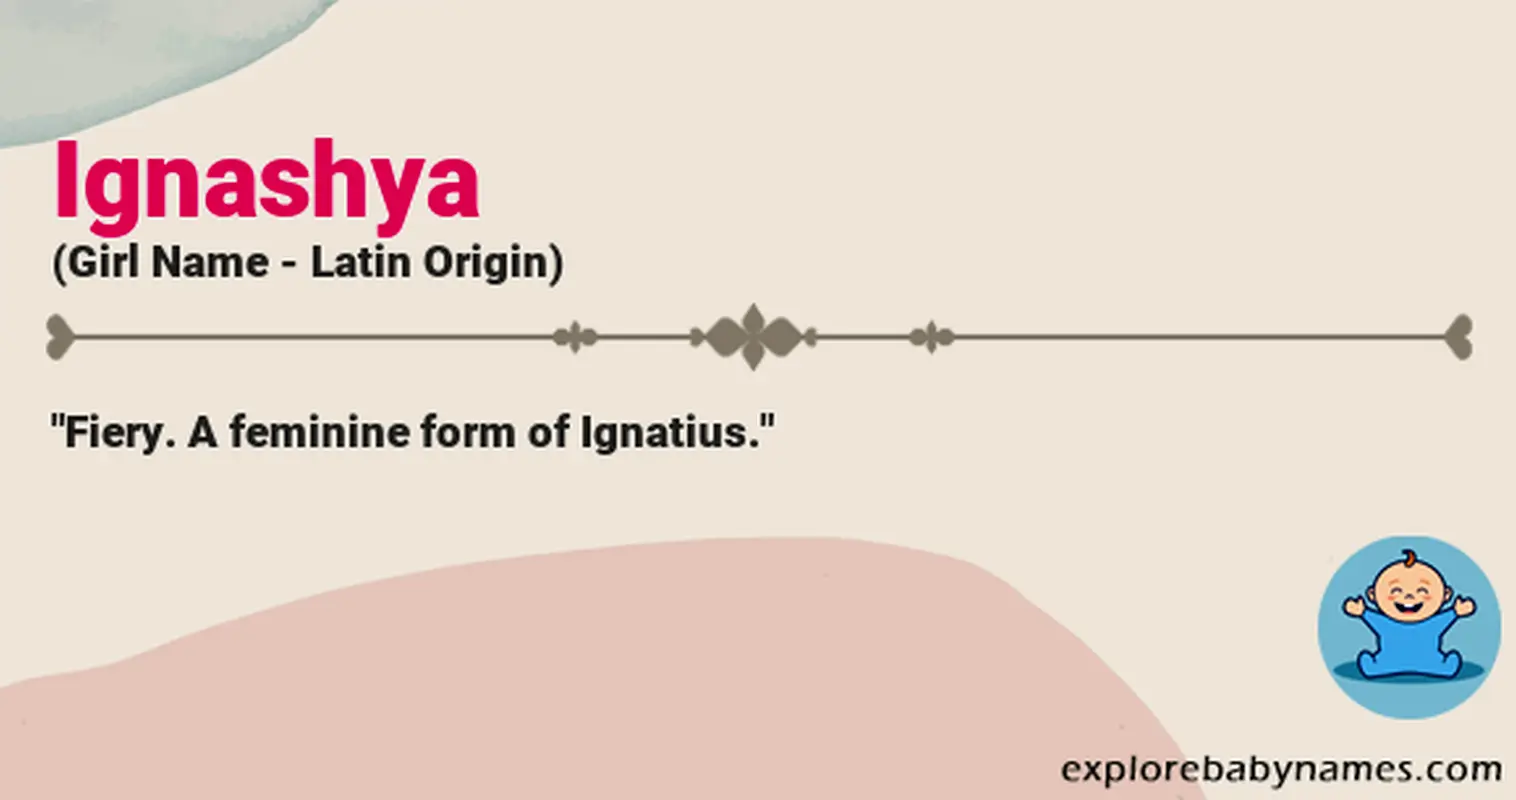 Meaning of Ignashya